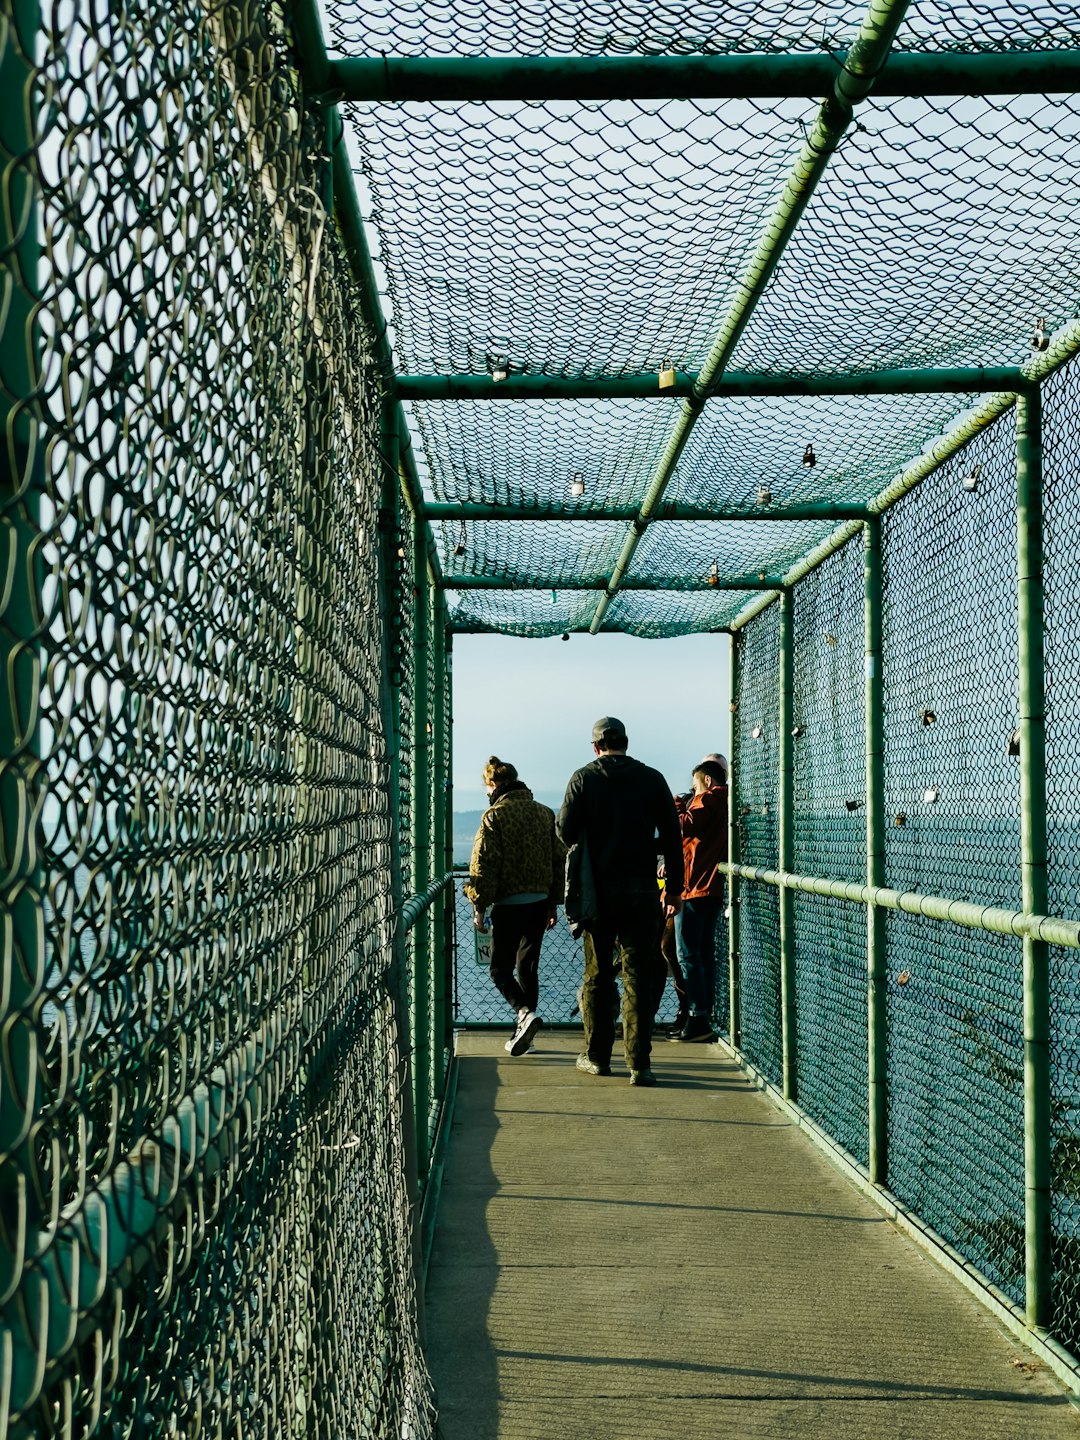 2 women walking on bridge during daytime